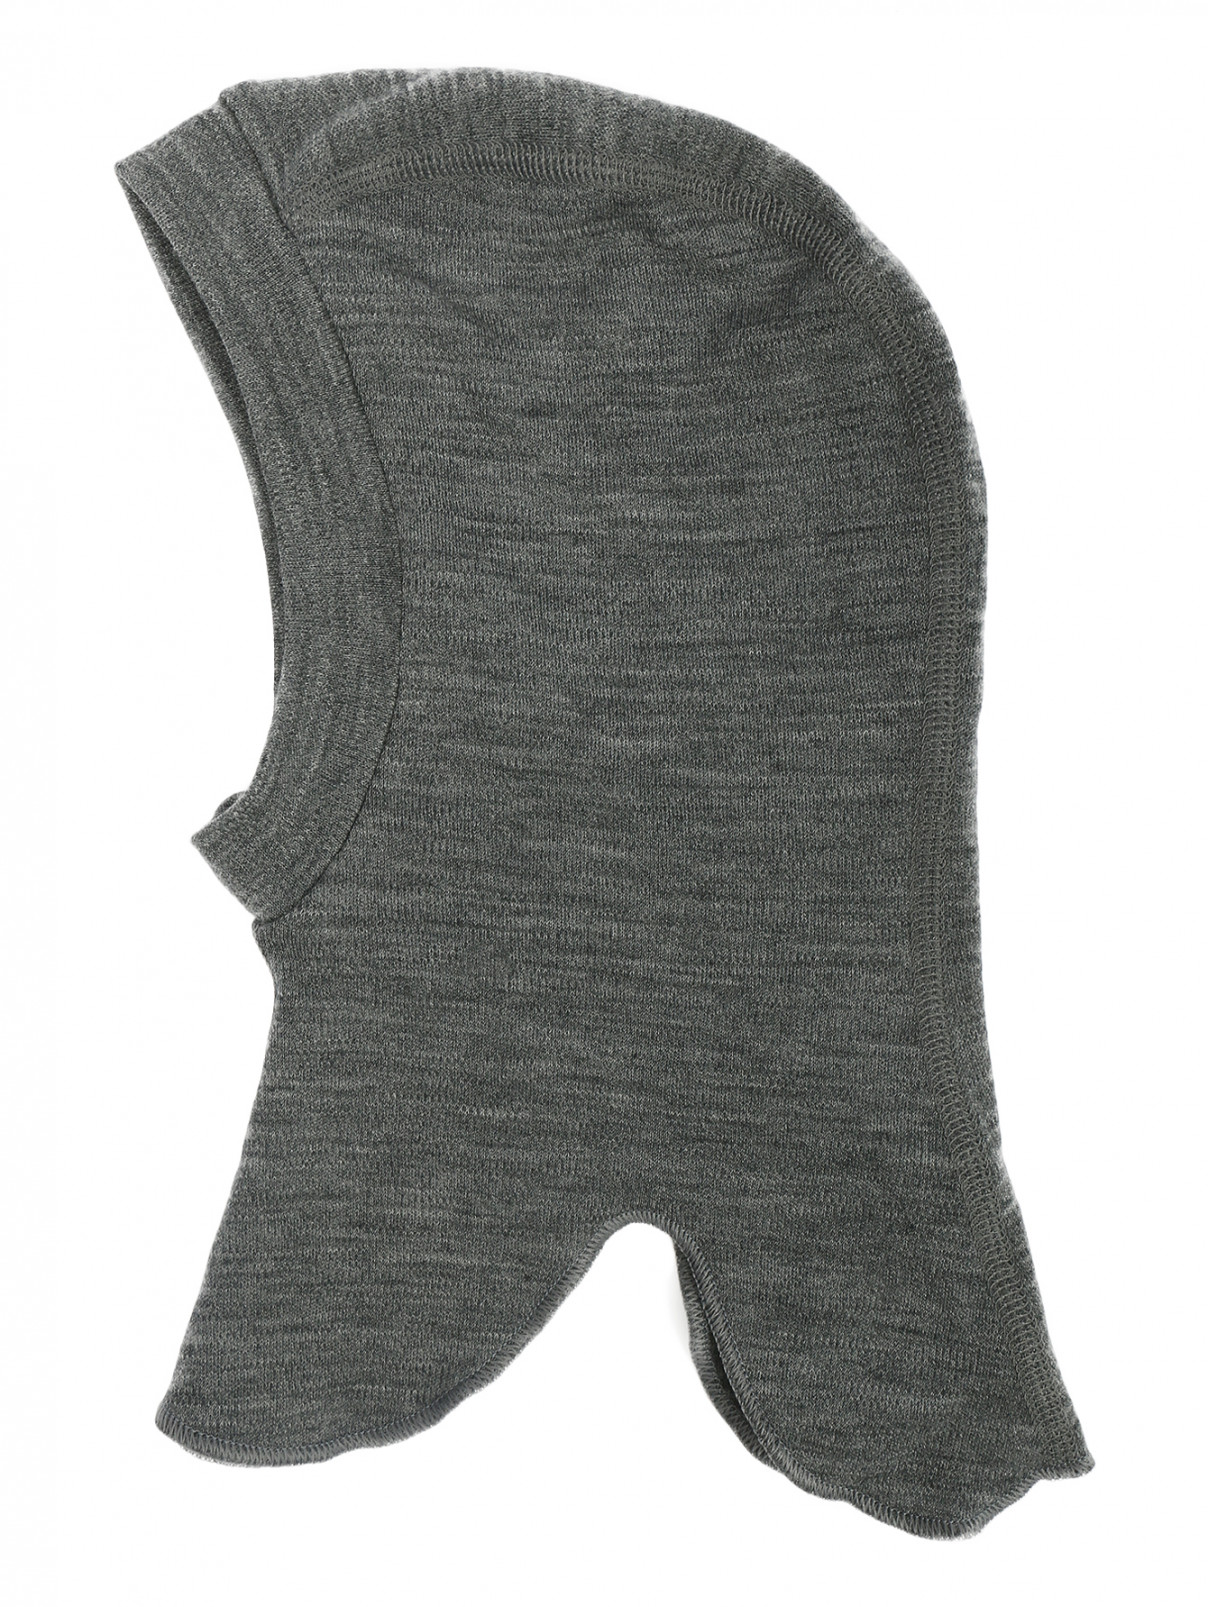 Подшлемник из шерсти Norveg  –  Общий вид  – Цвет:  Серый